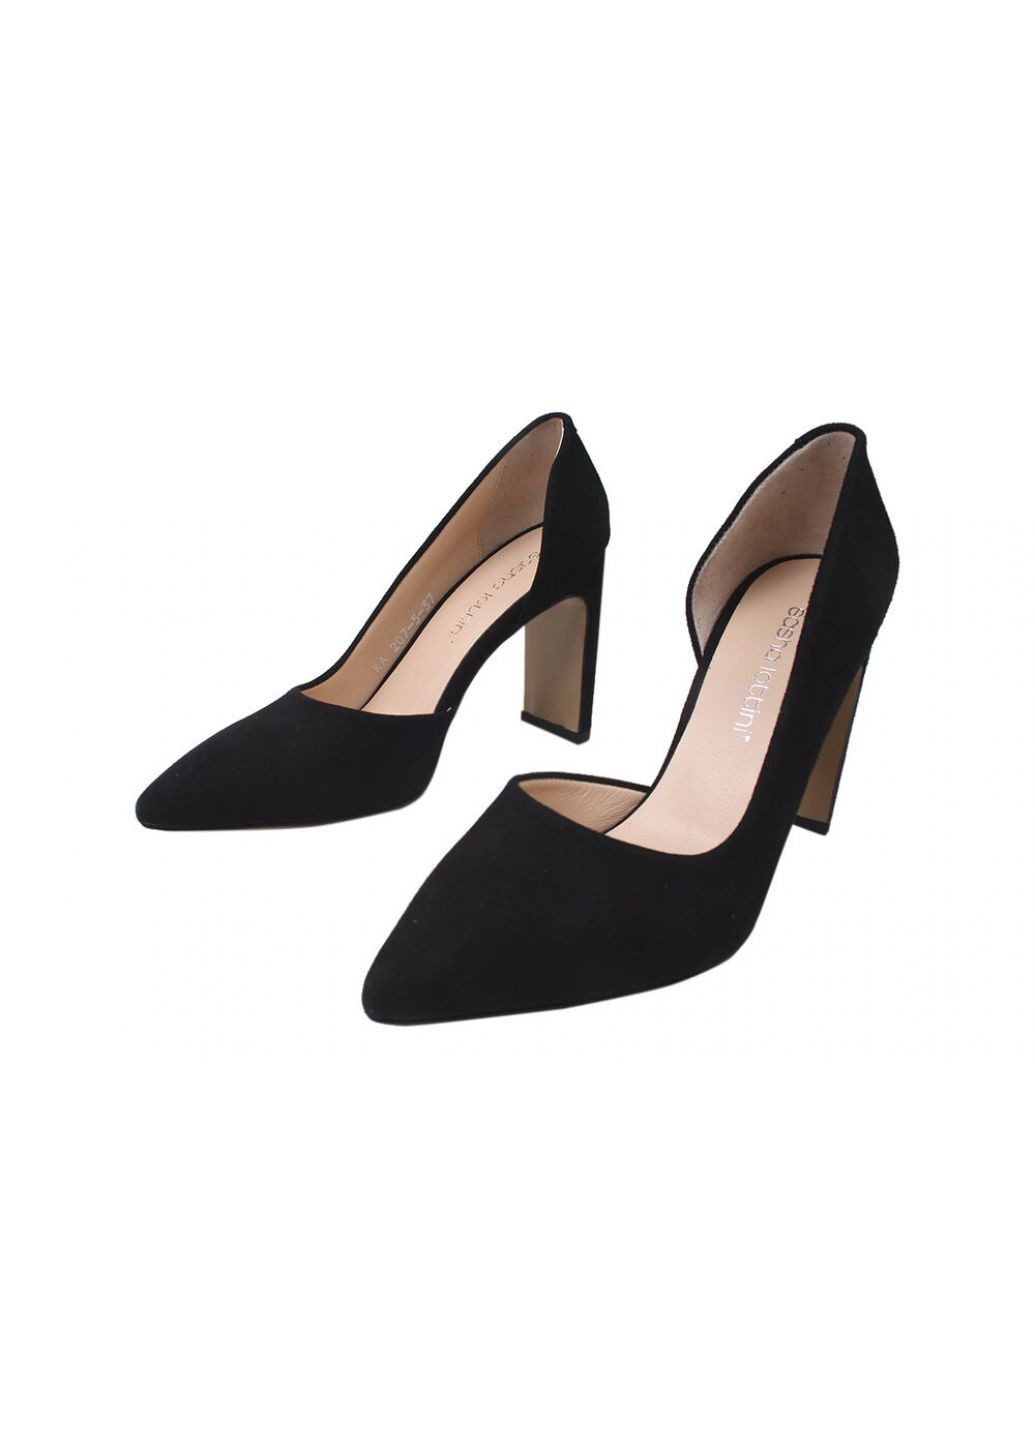 Туфли на каблуке женские натуральная замша, цвет черный Lottini